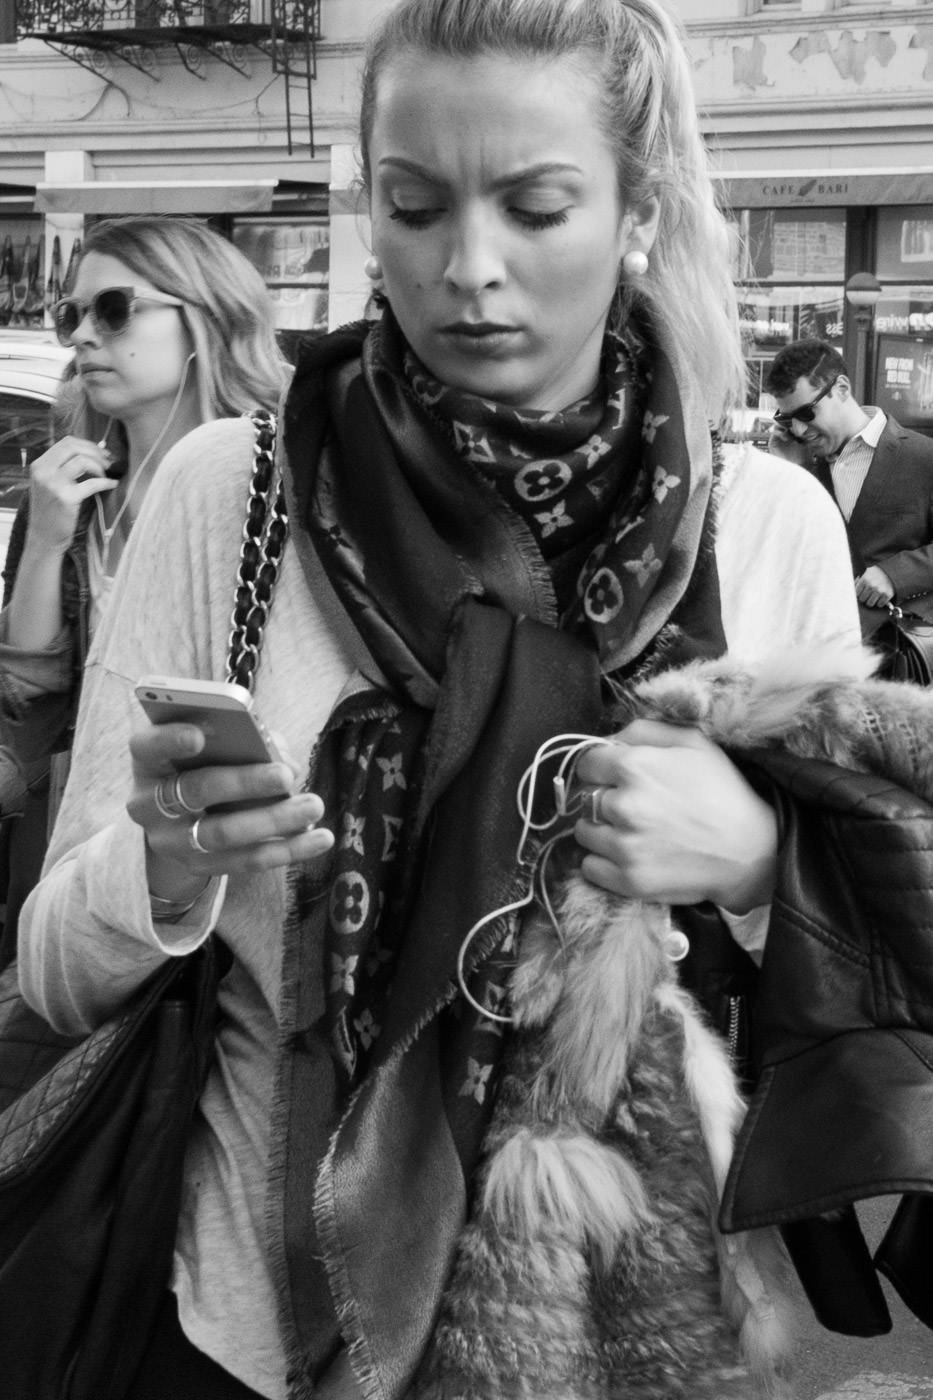 Fotografía callejera: retrato en blanco y negro de una mujer con cola de caballo revisando su teléfono